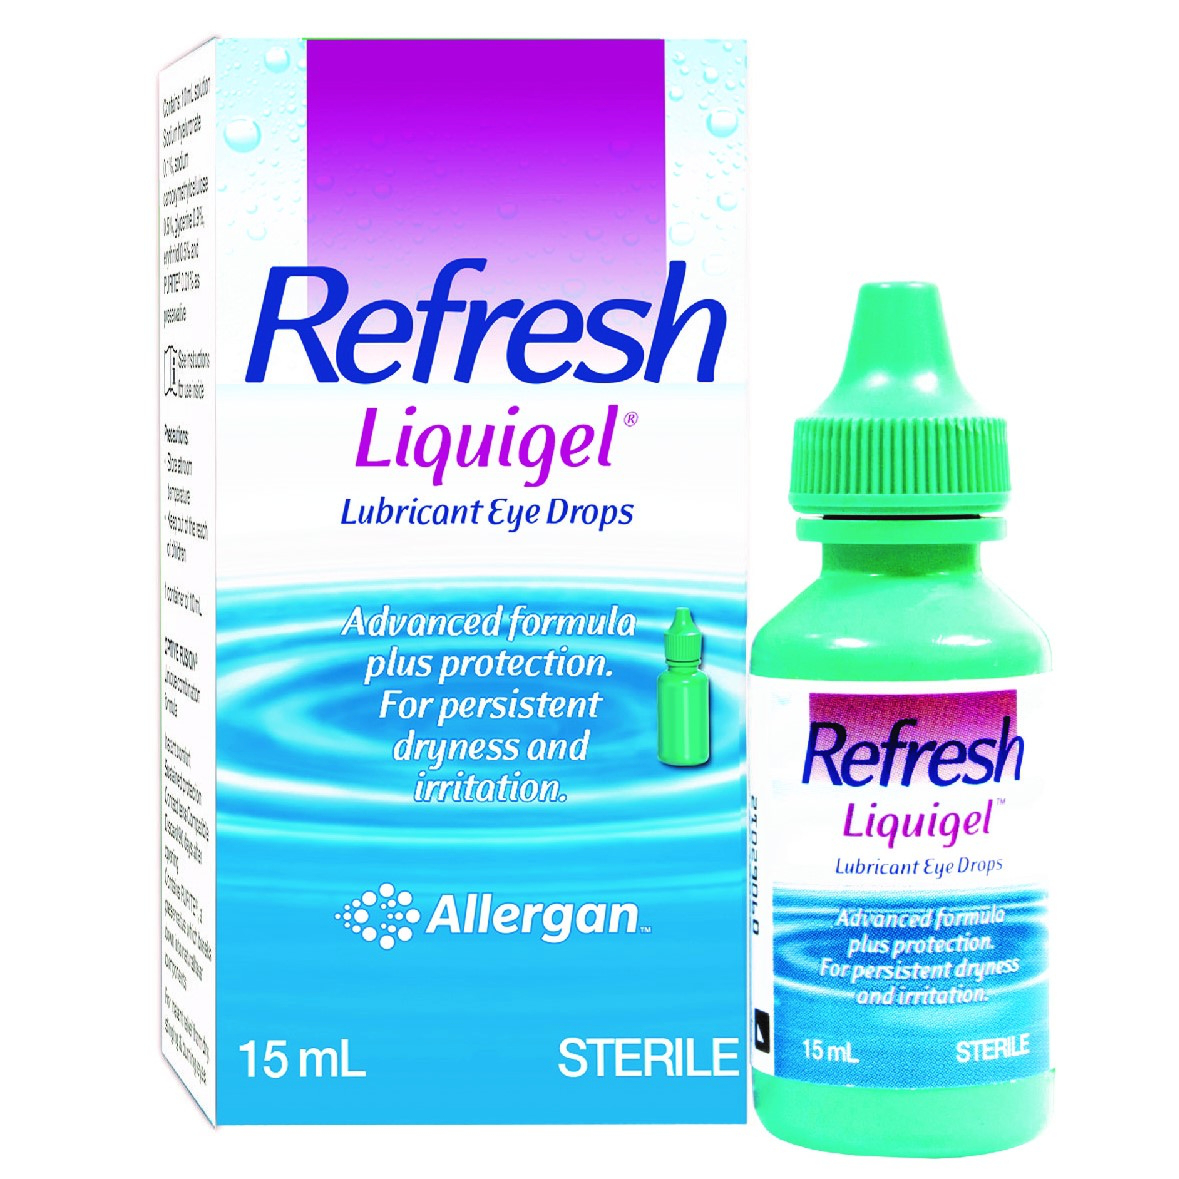 Thuốc nhỏ mắt Refresh Liquigel có công dụng gì?
